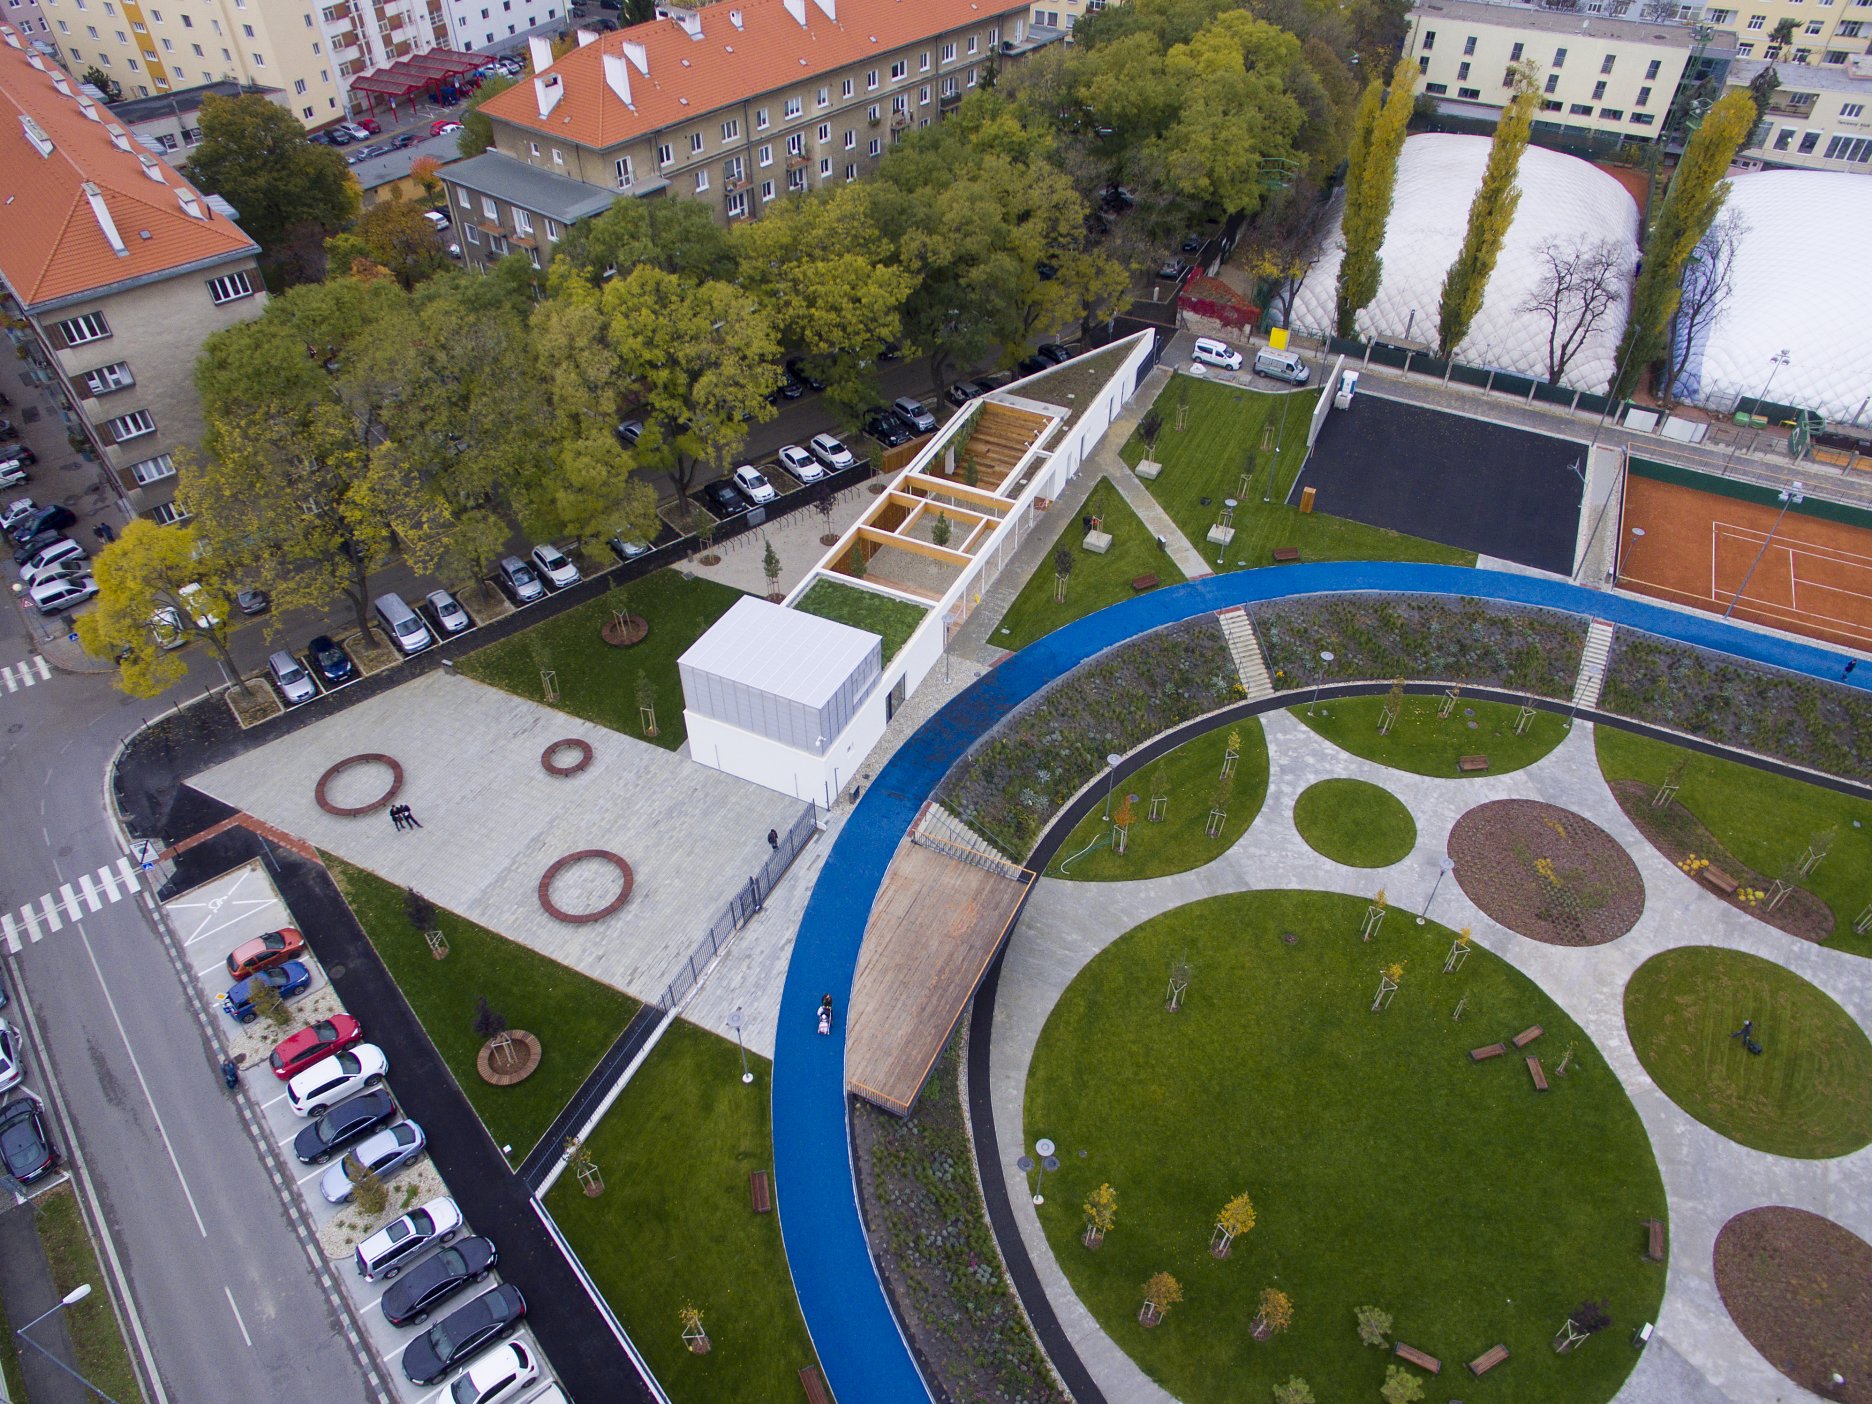 Architekti rozšírili verejný priestor od Kalinčiakovej ulice, ktorý vyúsťuje do nástupného námestia naväzujúceho na vyhliadkové mólo. Nový pavilón definuje hranicu parku.